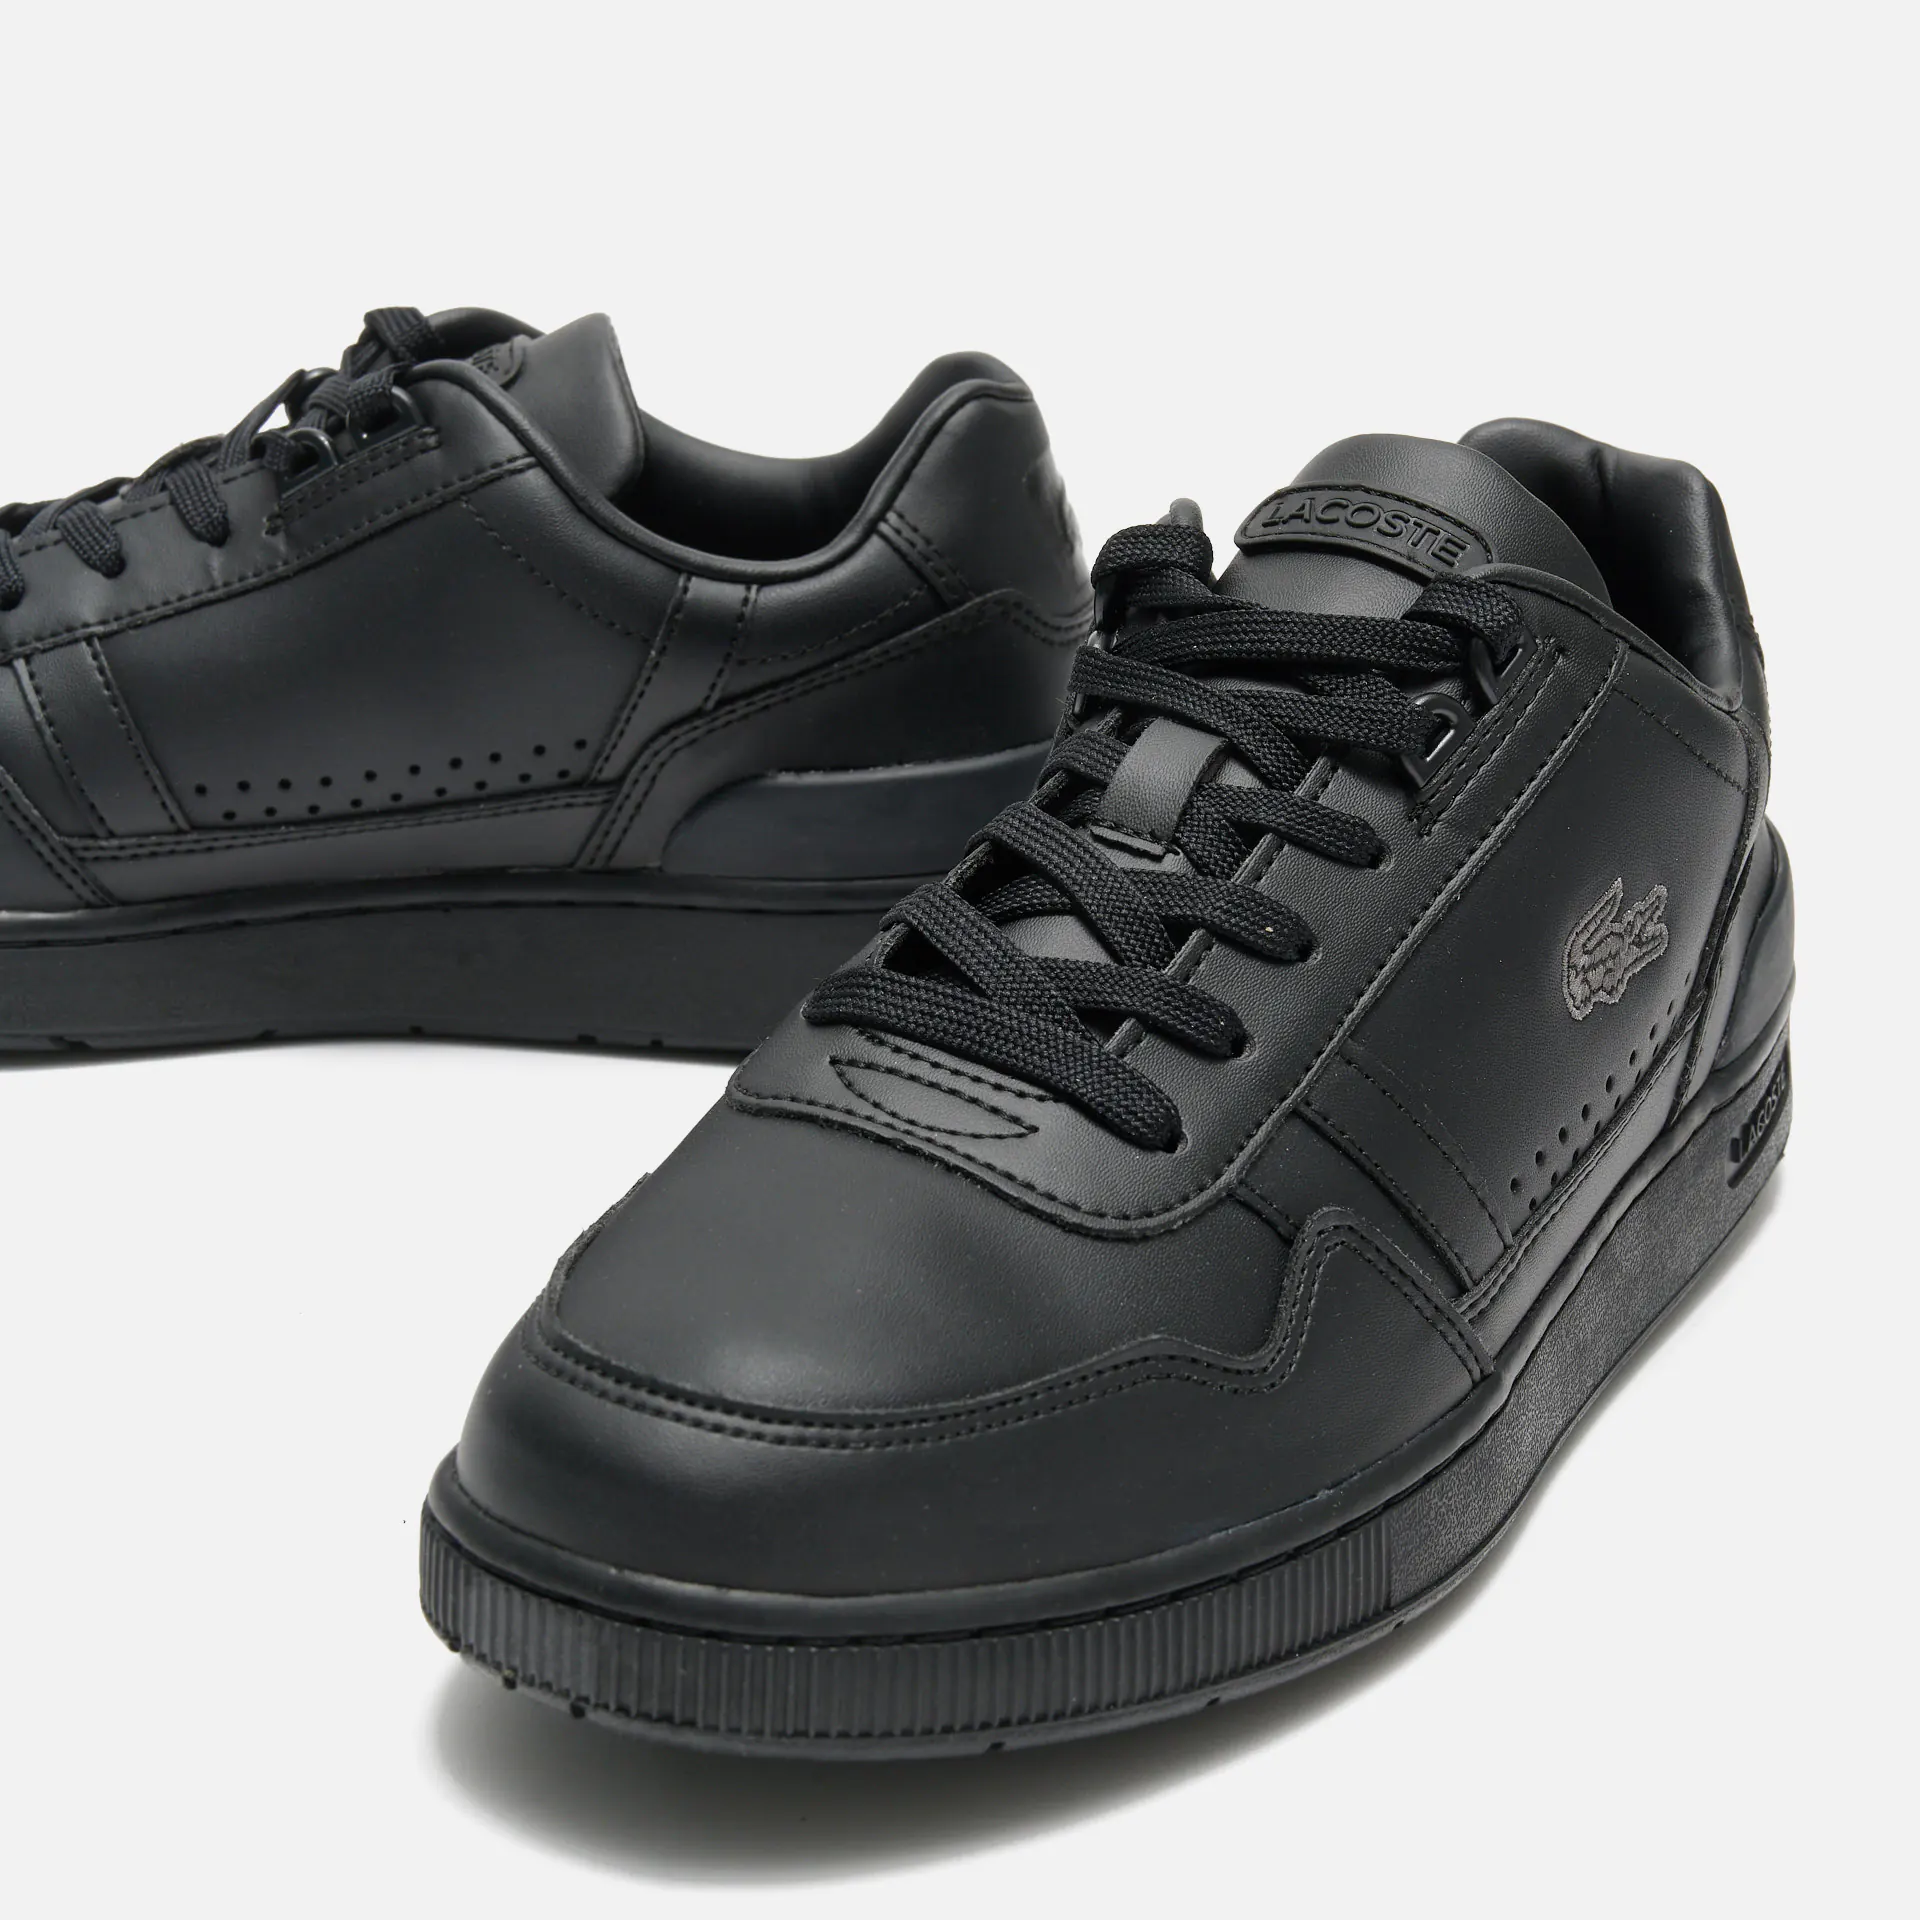 Lacoste T-Clip 223 4 SMA Sneaker Black/Black